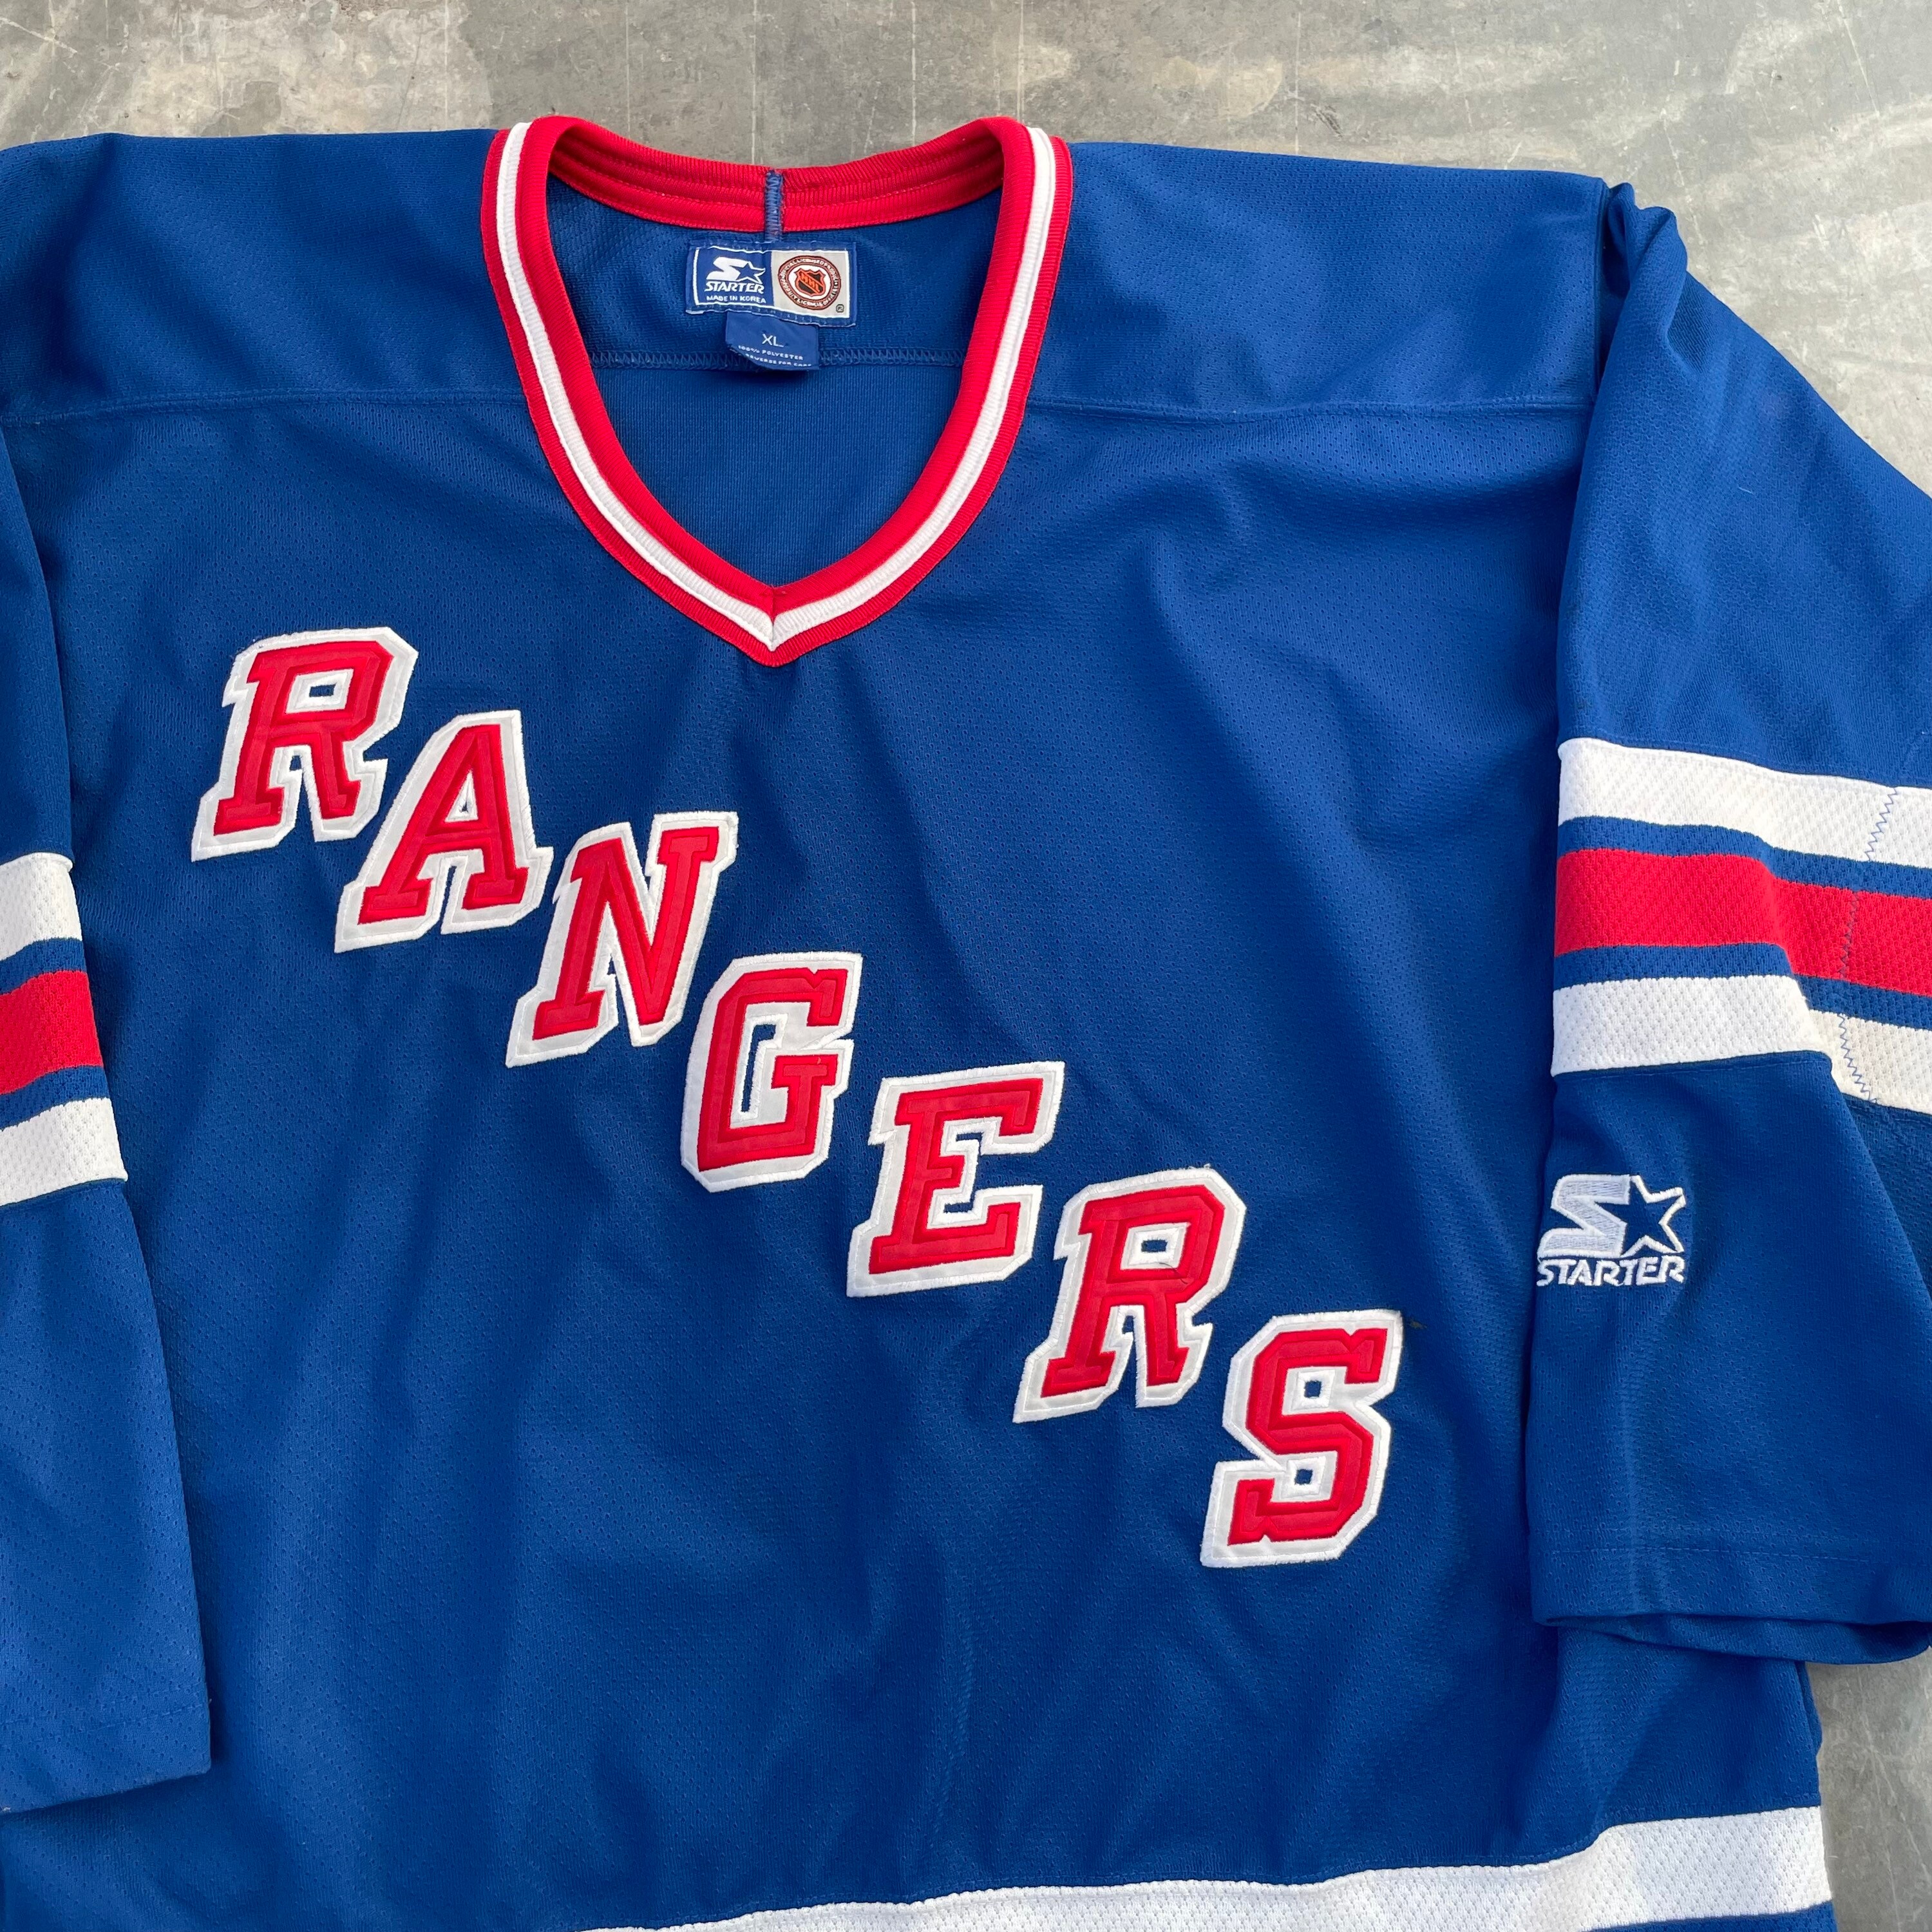 NHL New York Rangers Custom Name Number 1994 Throwback Vintage Jersey  Pullover Hoodie